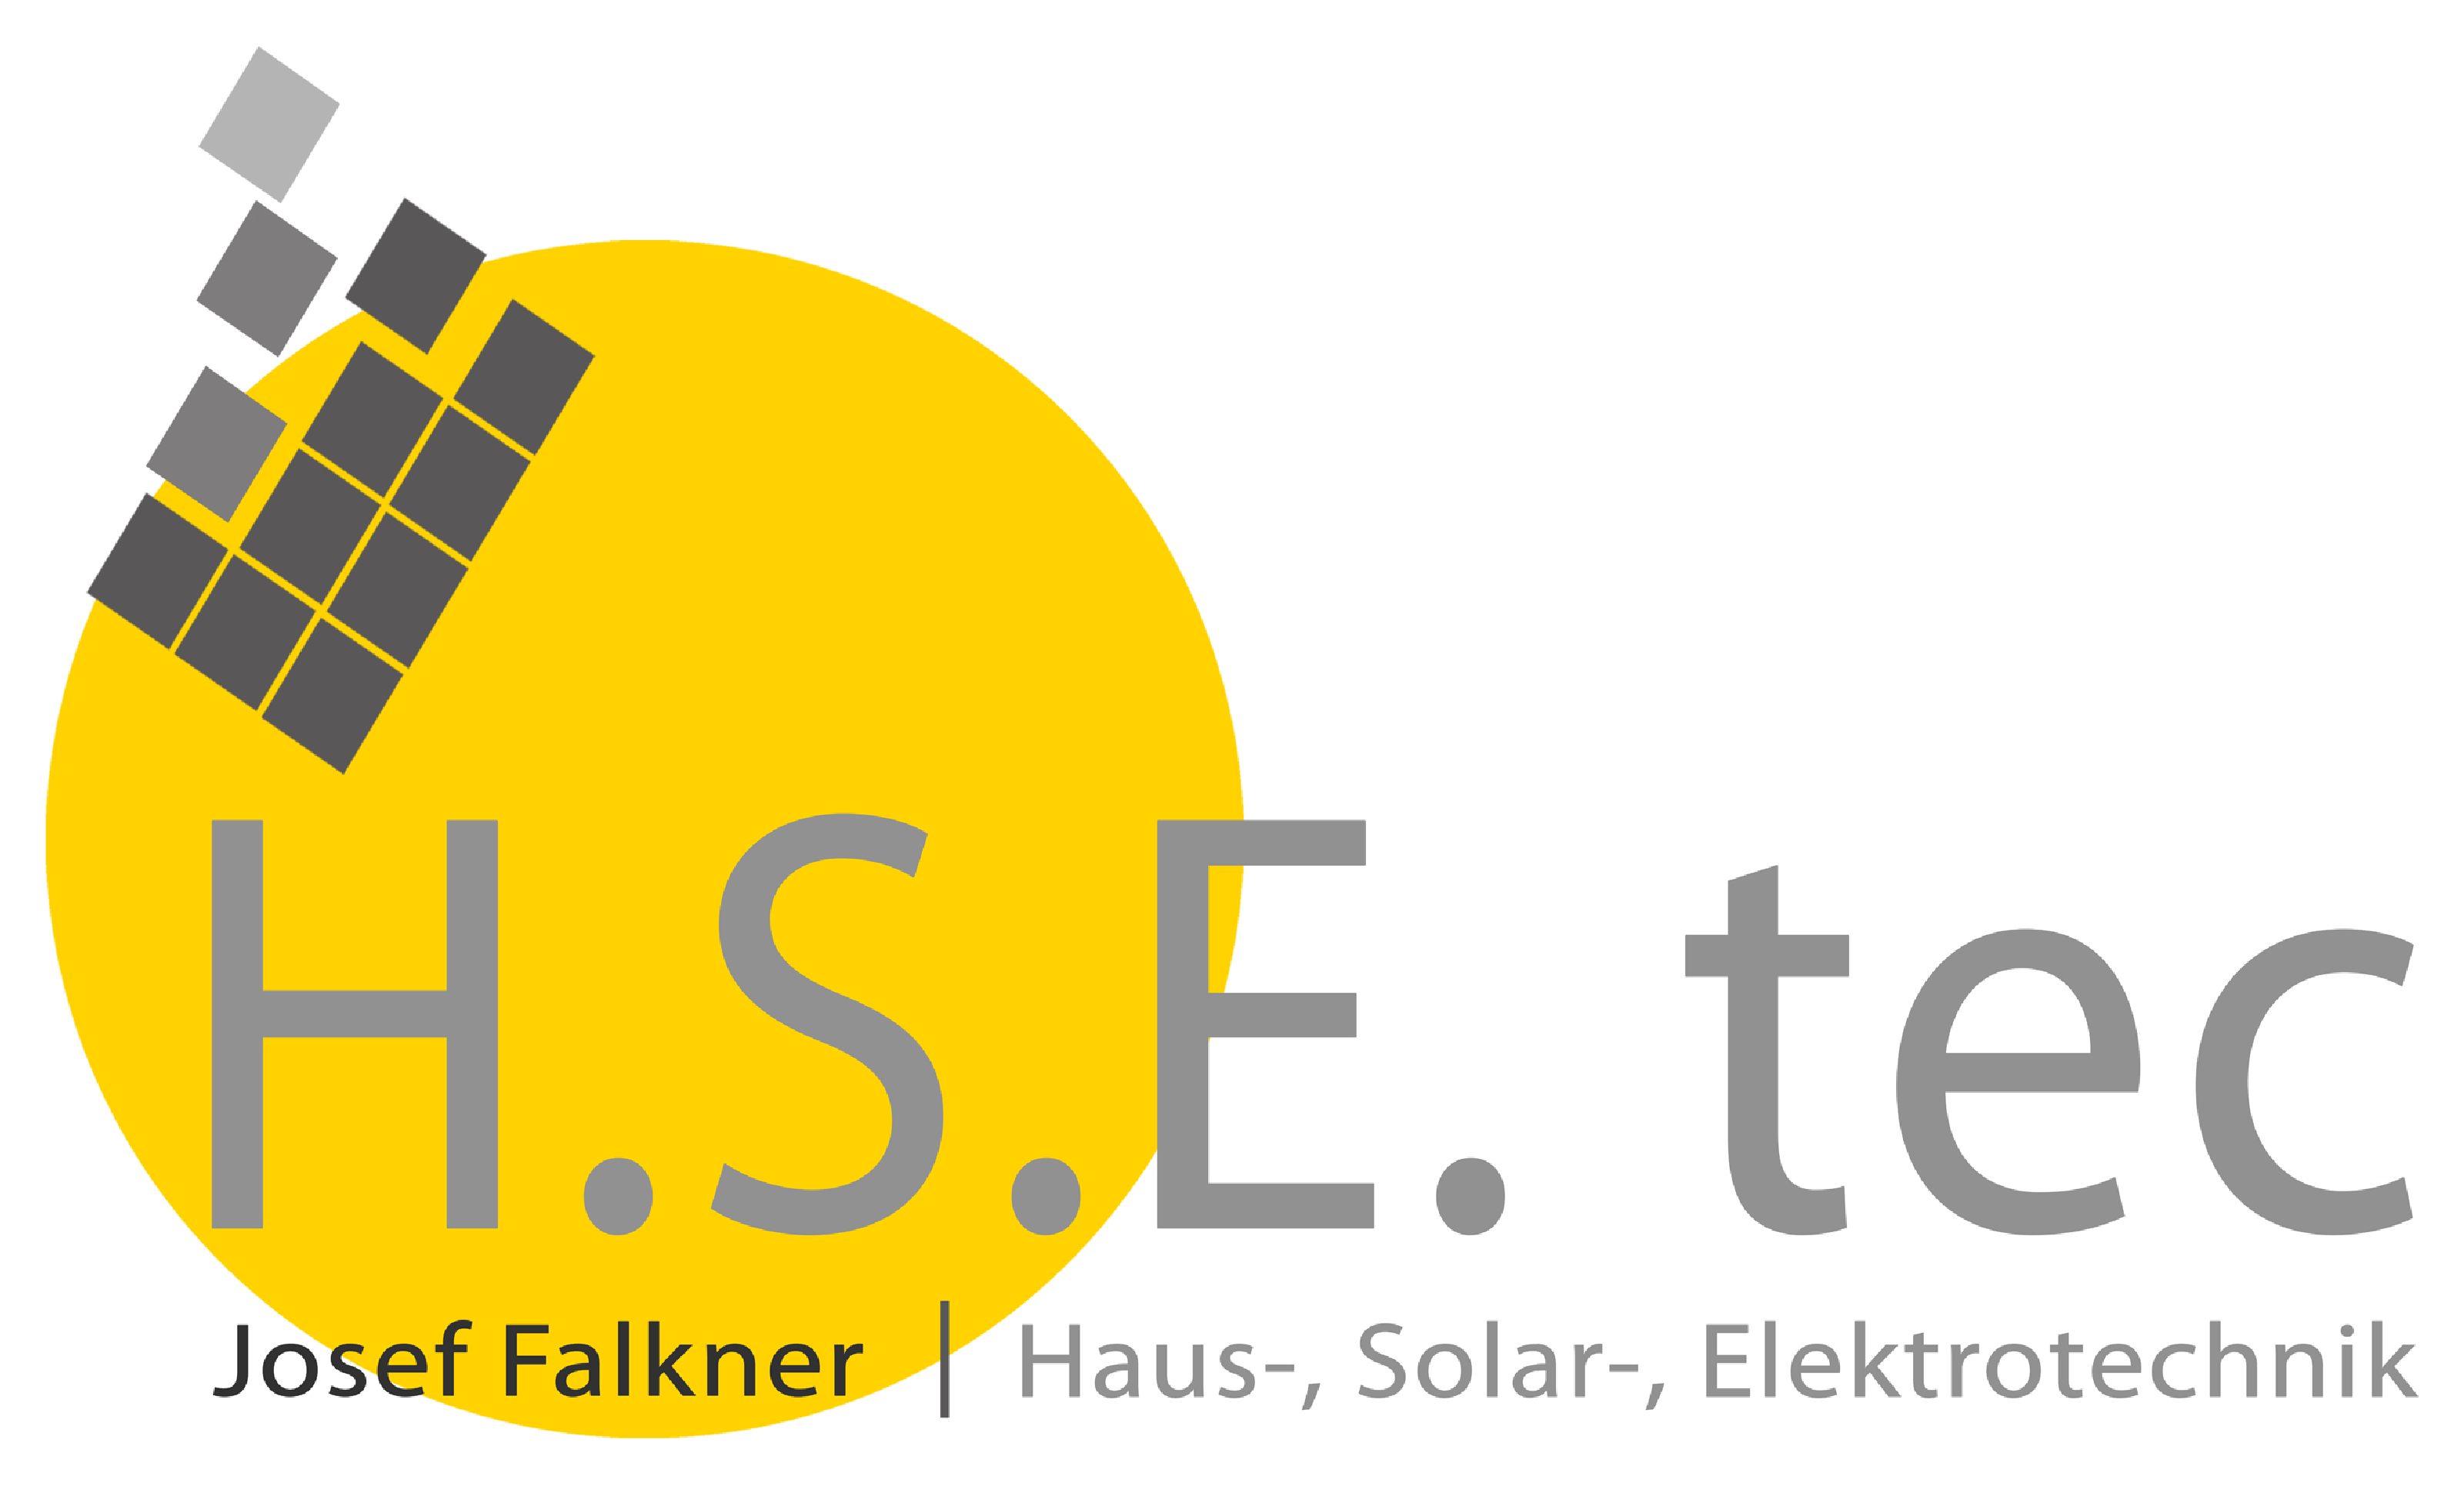 H.S.E.-tec – Josef Falkner